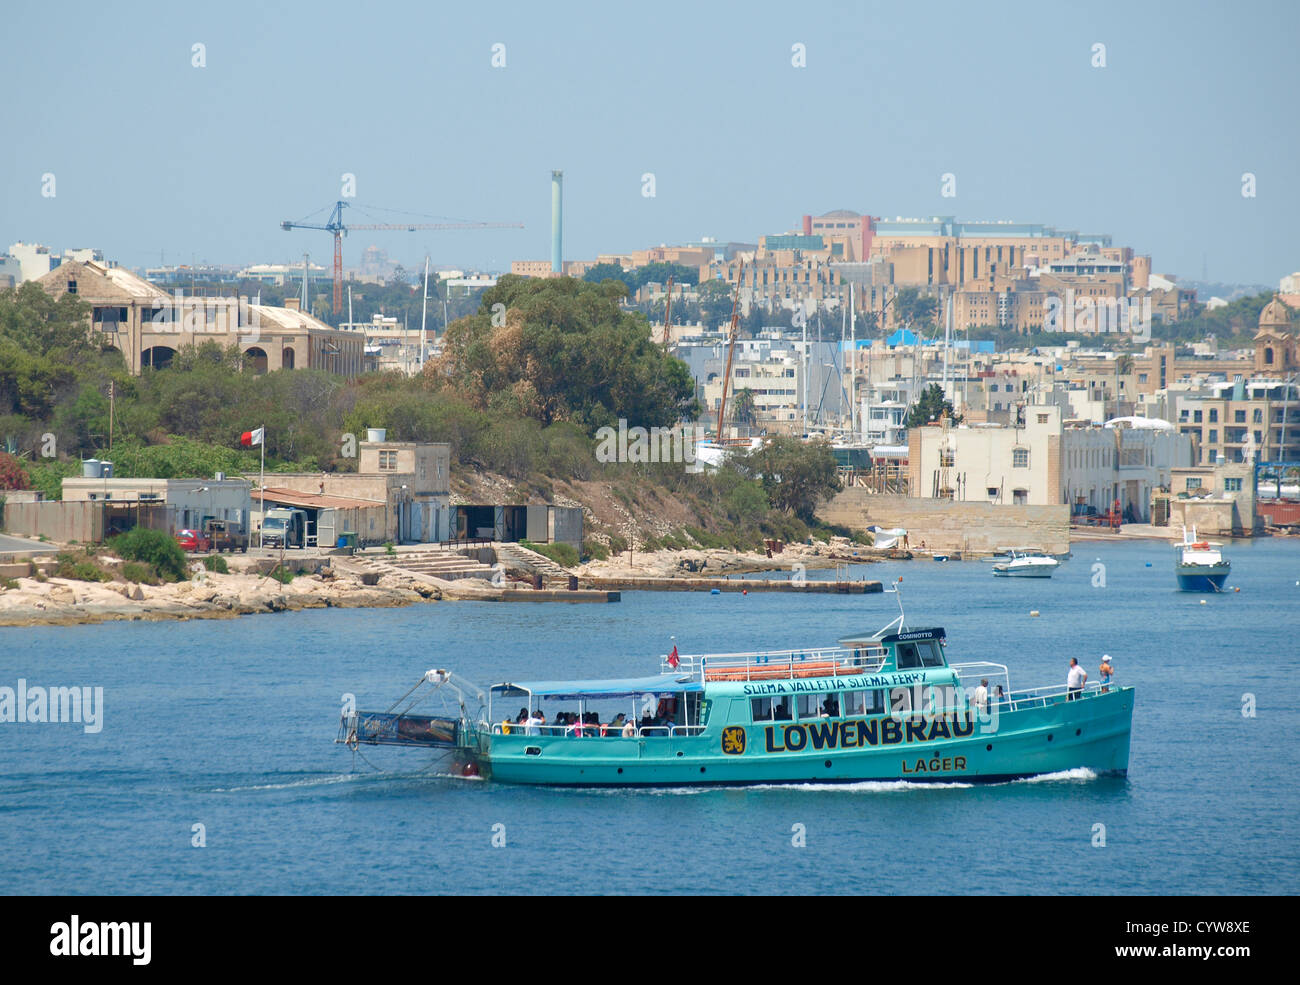 The Sliema to Valletta ferry, Malta. Stock Photo